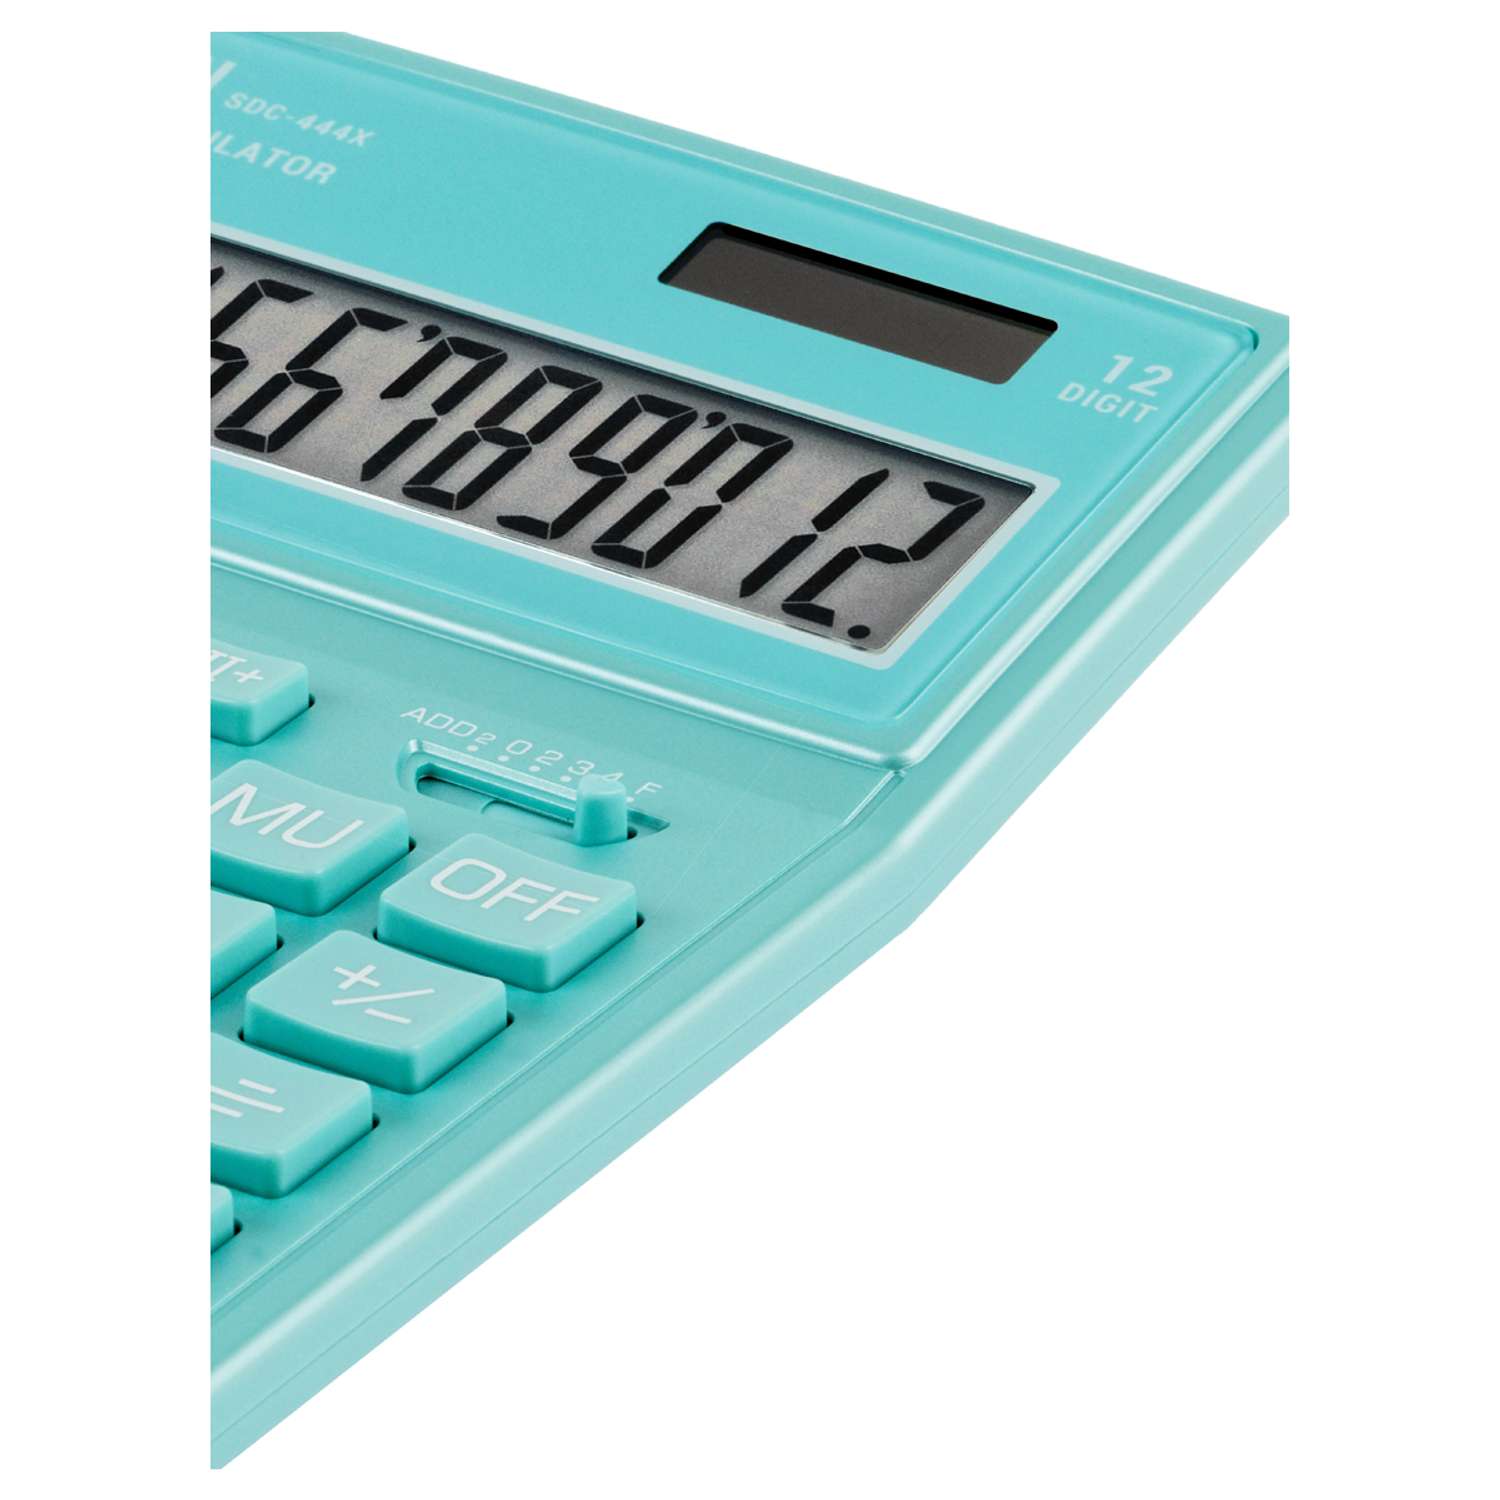 Калькулятор Eleven SDC-444X-GN 12 разрядов двойное питание 155*204*33мм бирюзовый - фото 5